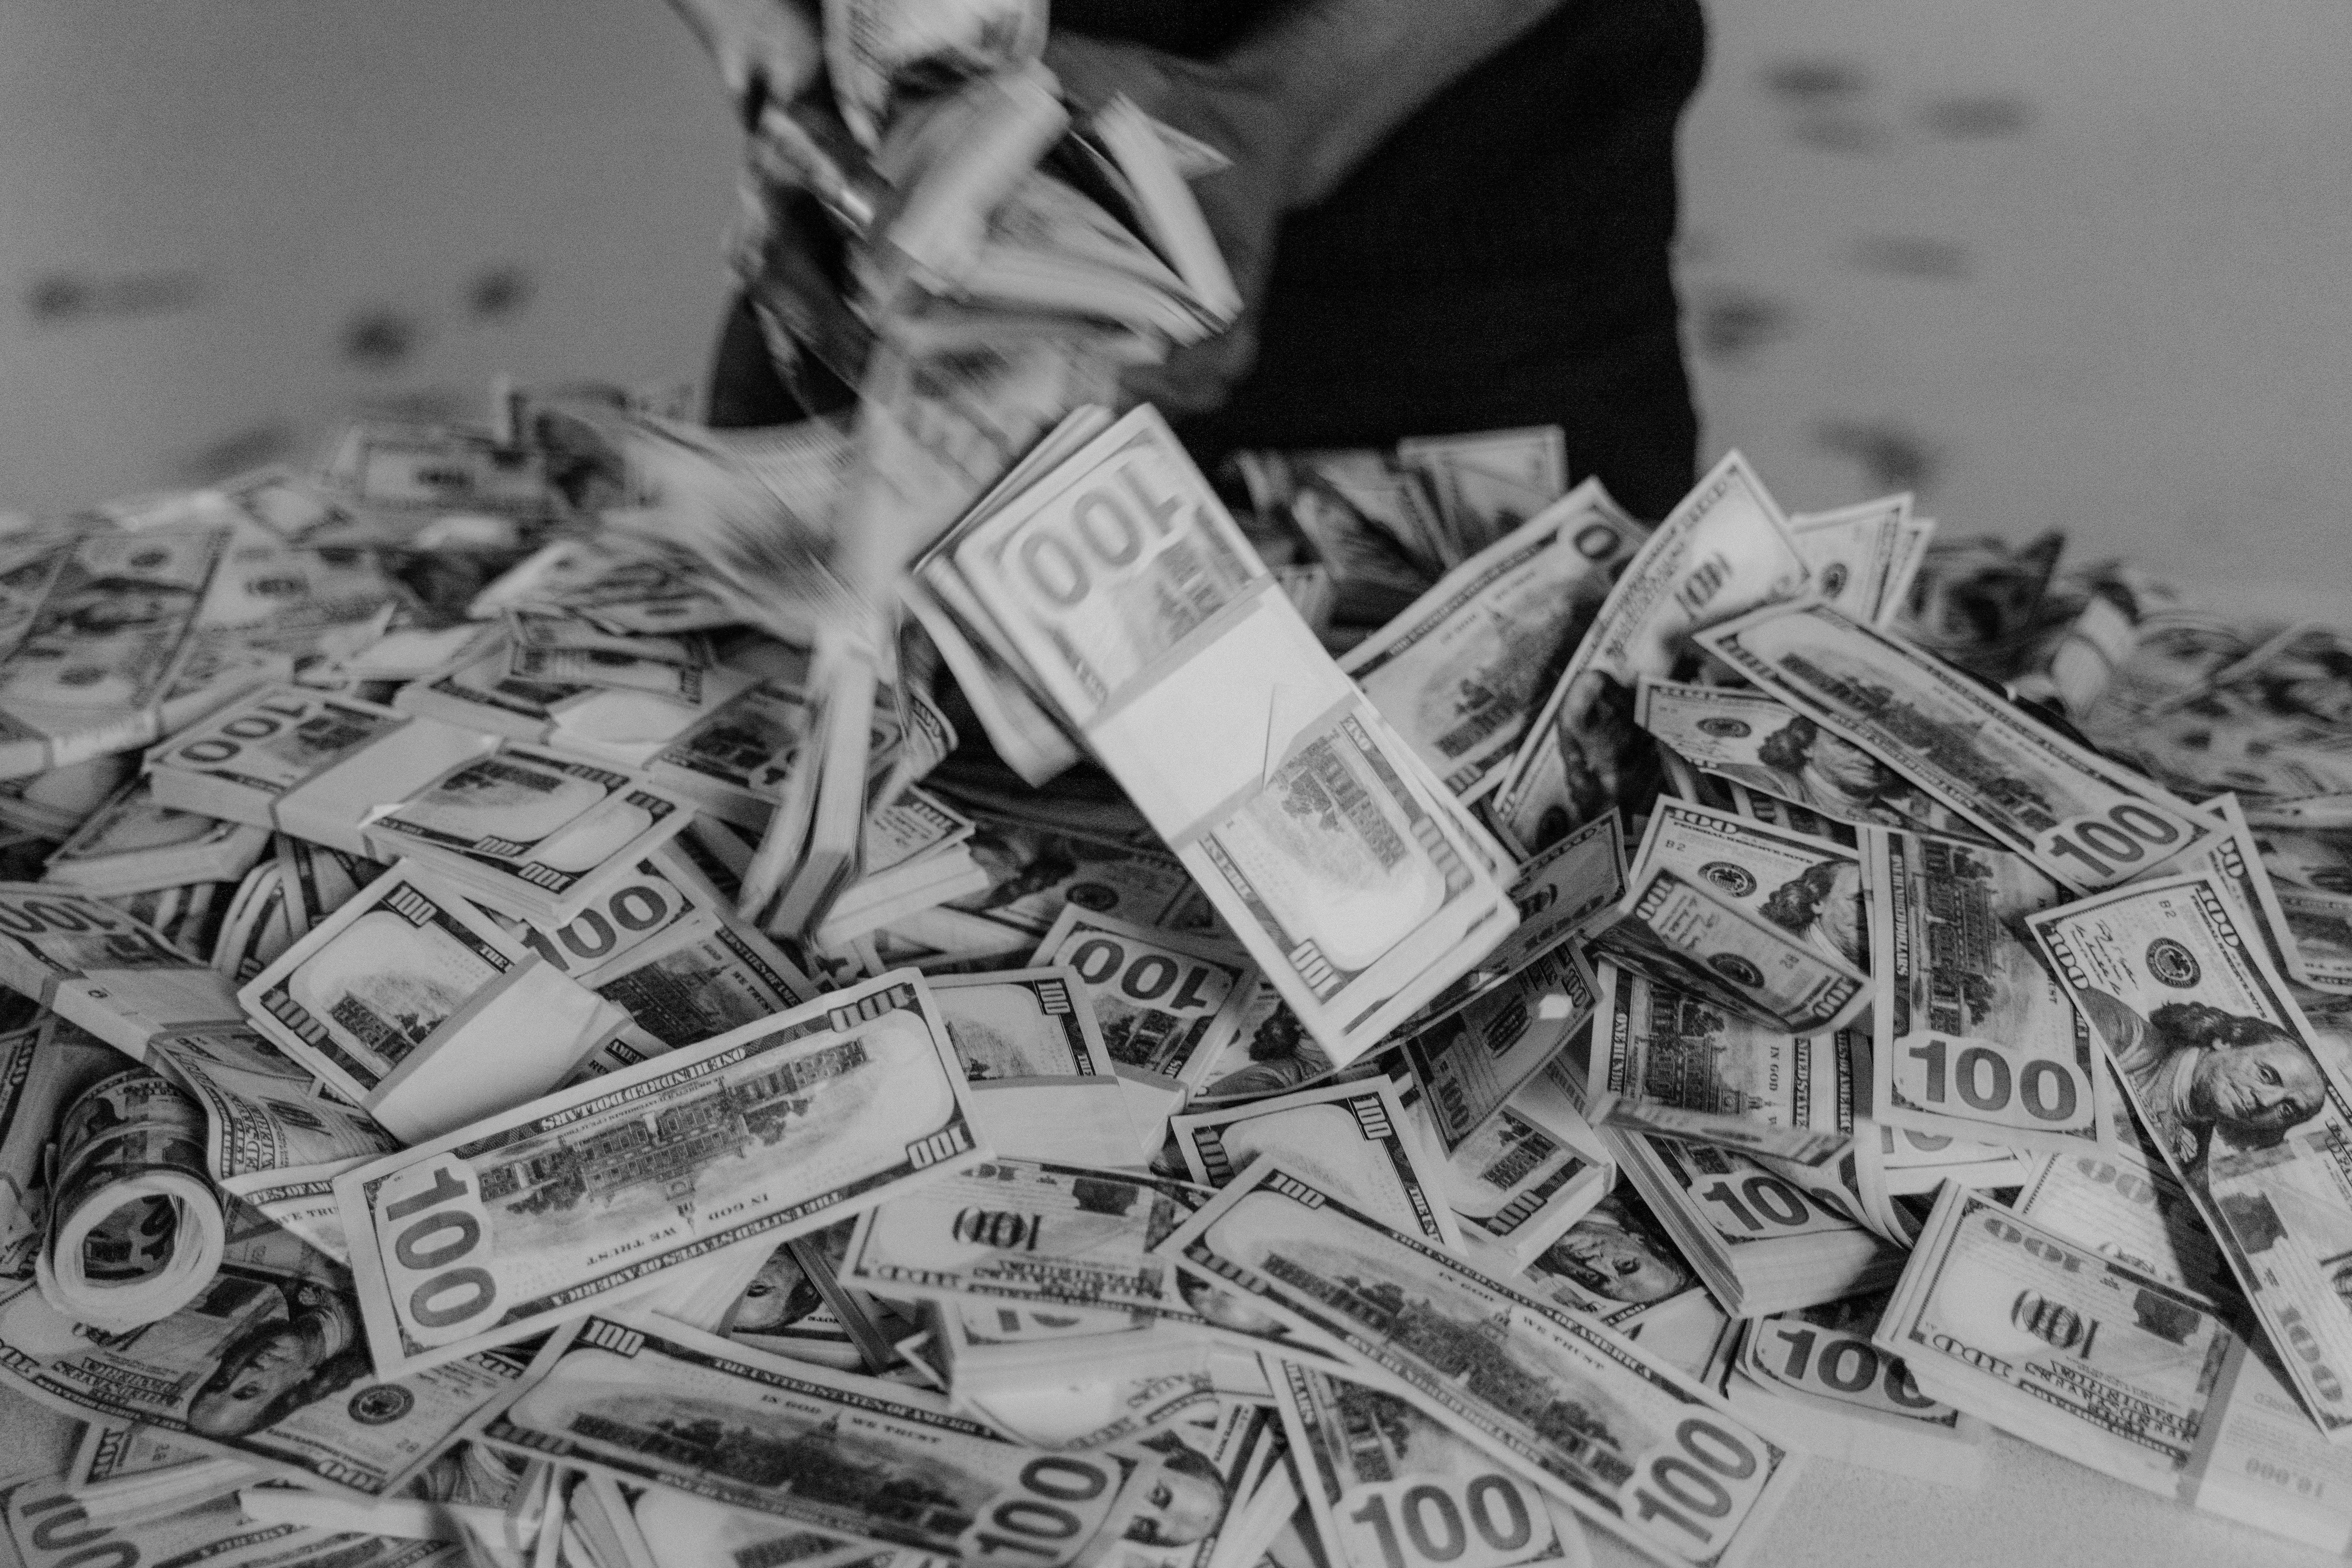  Geld Hintergrundbild 6000x4000. Kostenloses Foto zum Thema: banknoten, bündeln, dollar scheine, finanz, fülle, geld, kasse, nahansicht, profitieren, reich, schwarz und weiß, währung